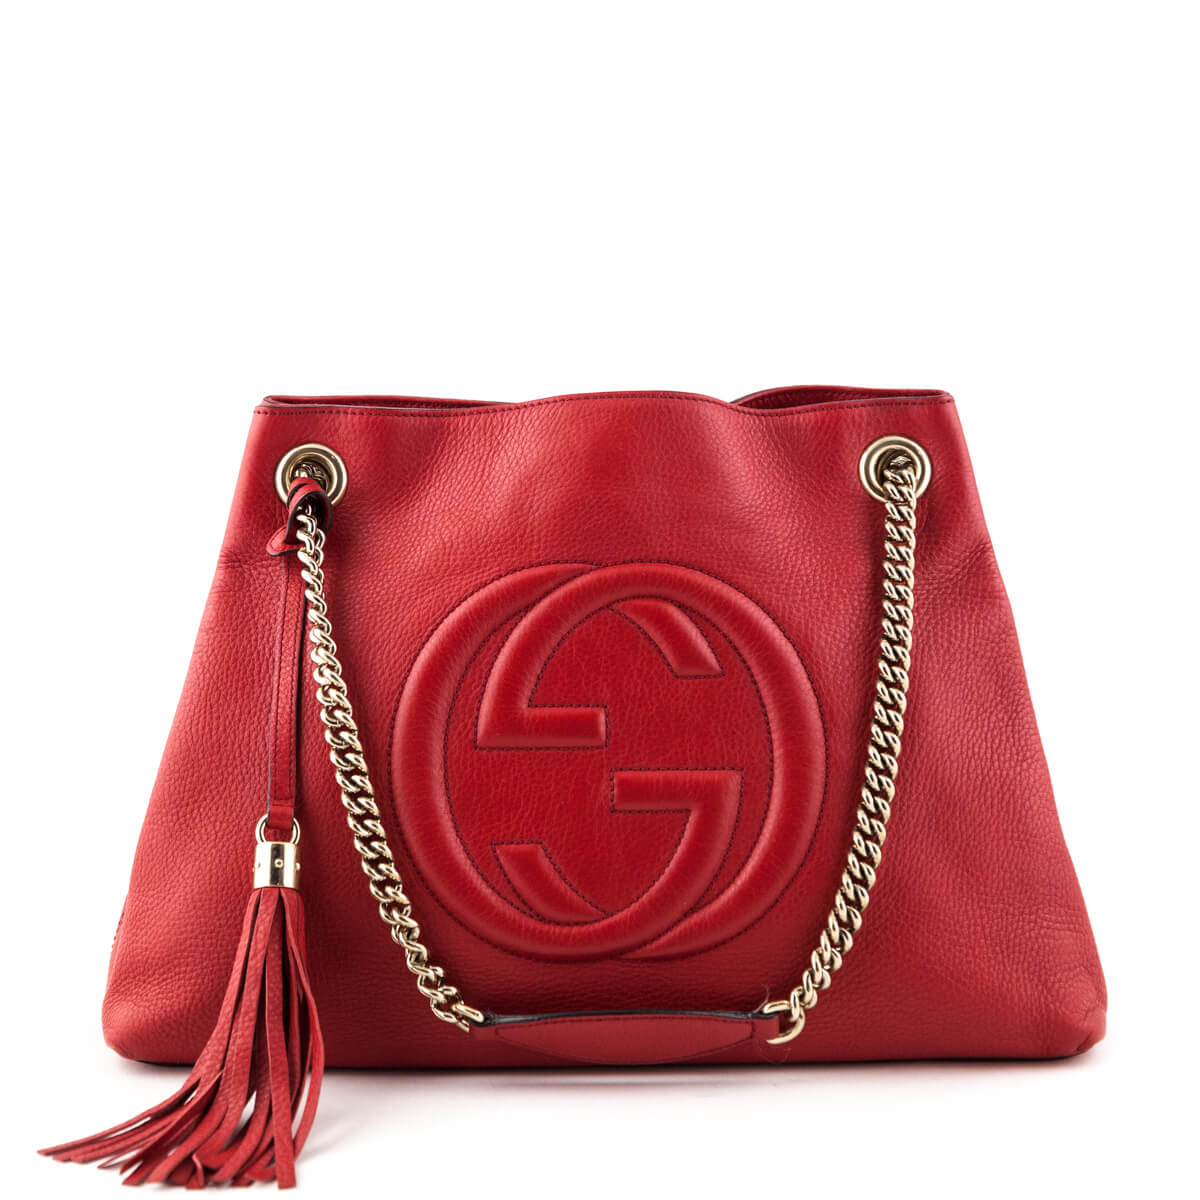 Gucci Red Soho Shoulder Bag - Authentic Gucci Handbags Canada